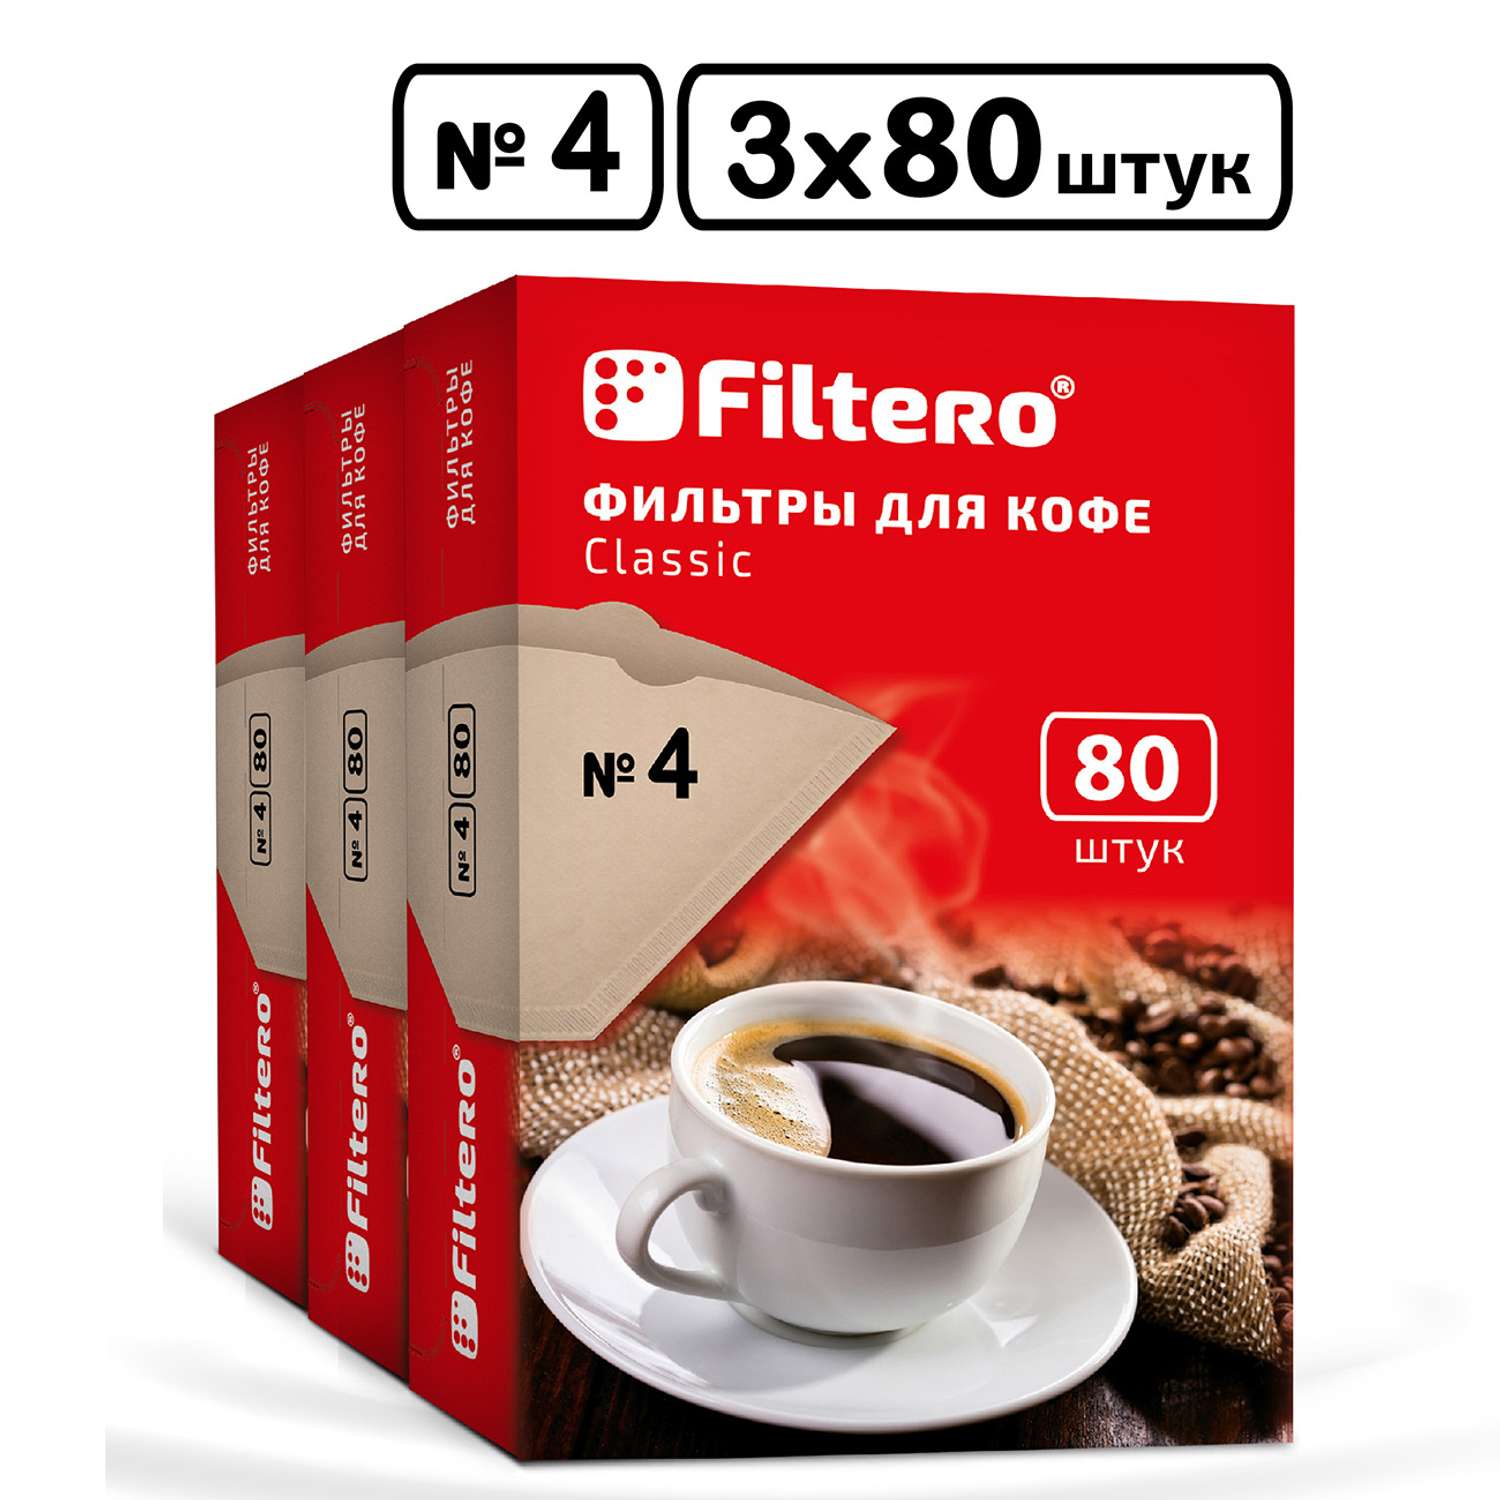 Комплект фильтров Filtero для кофеварки №4/240шт коричневые Classic - фото 1